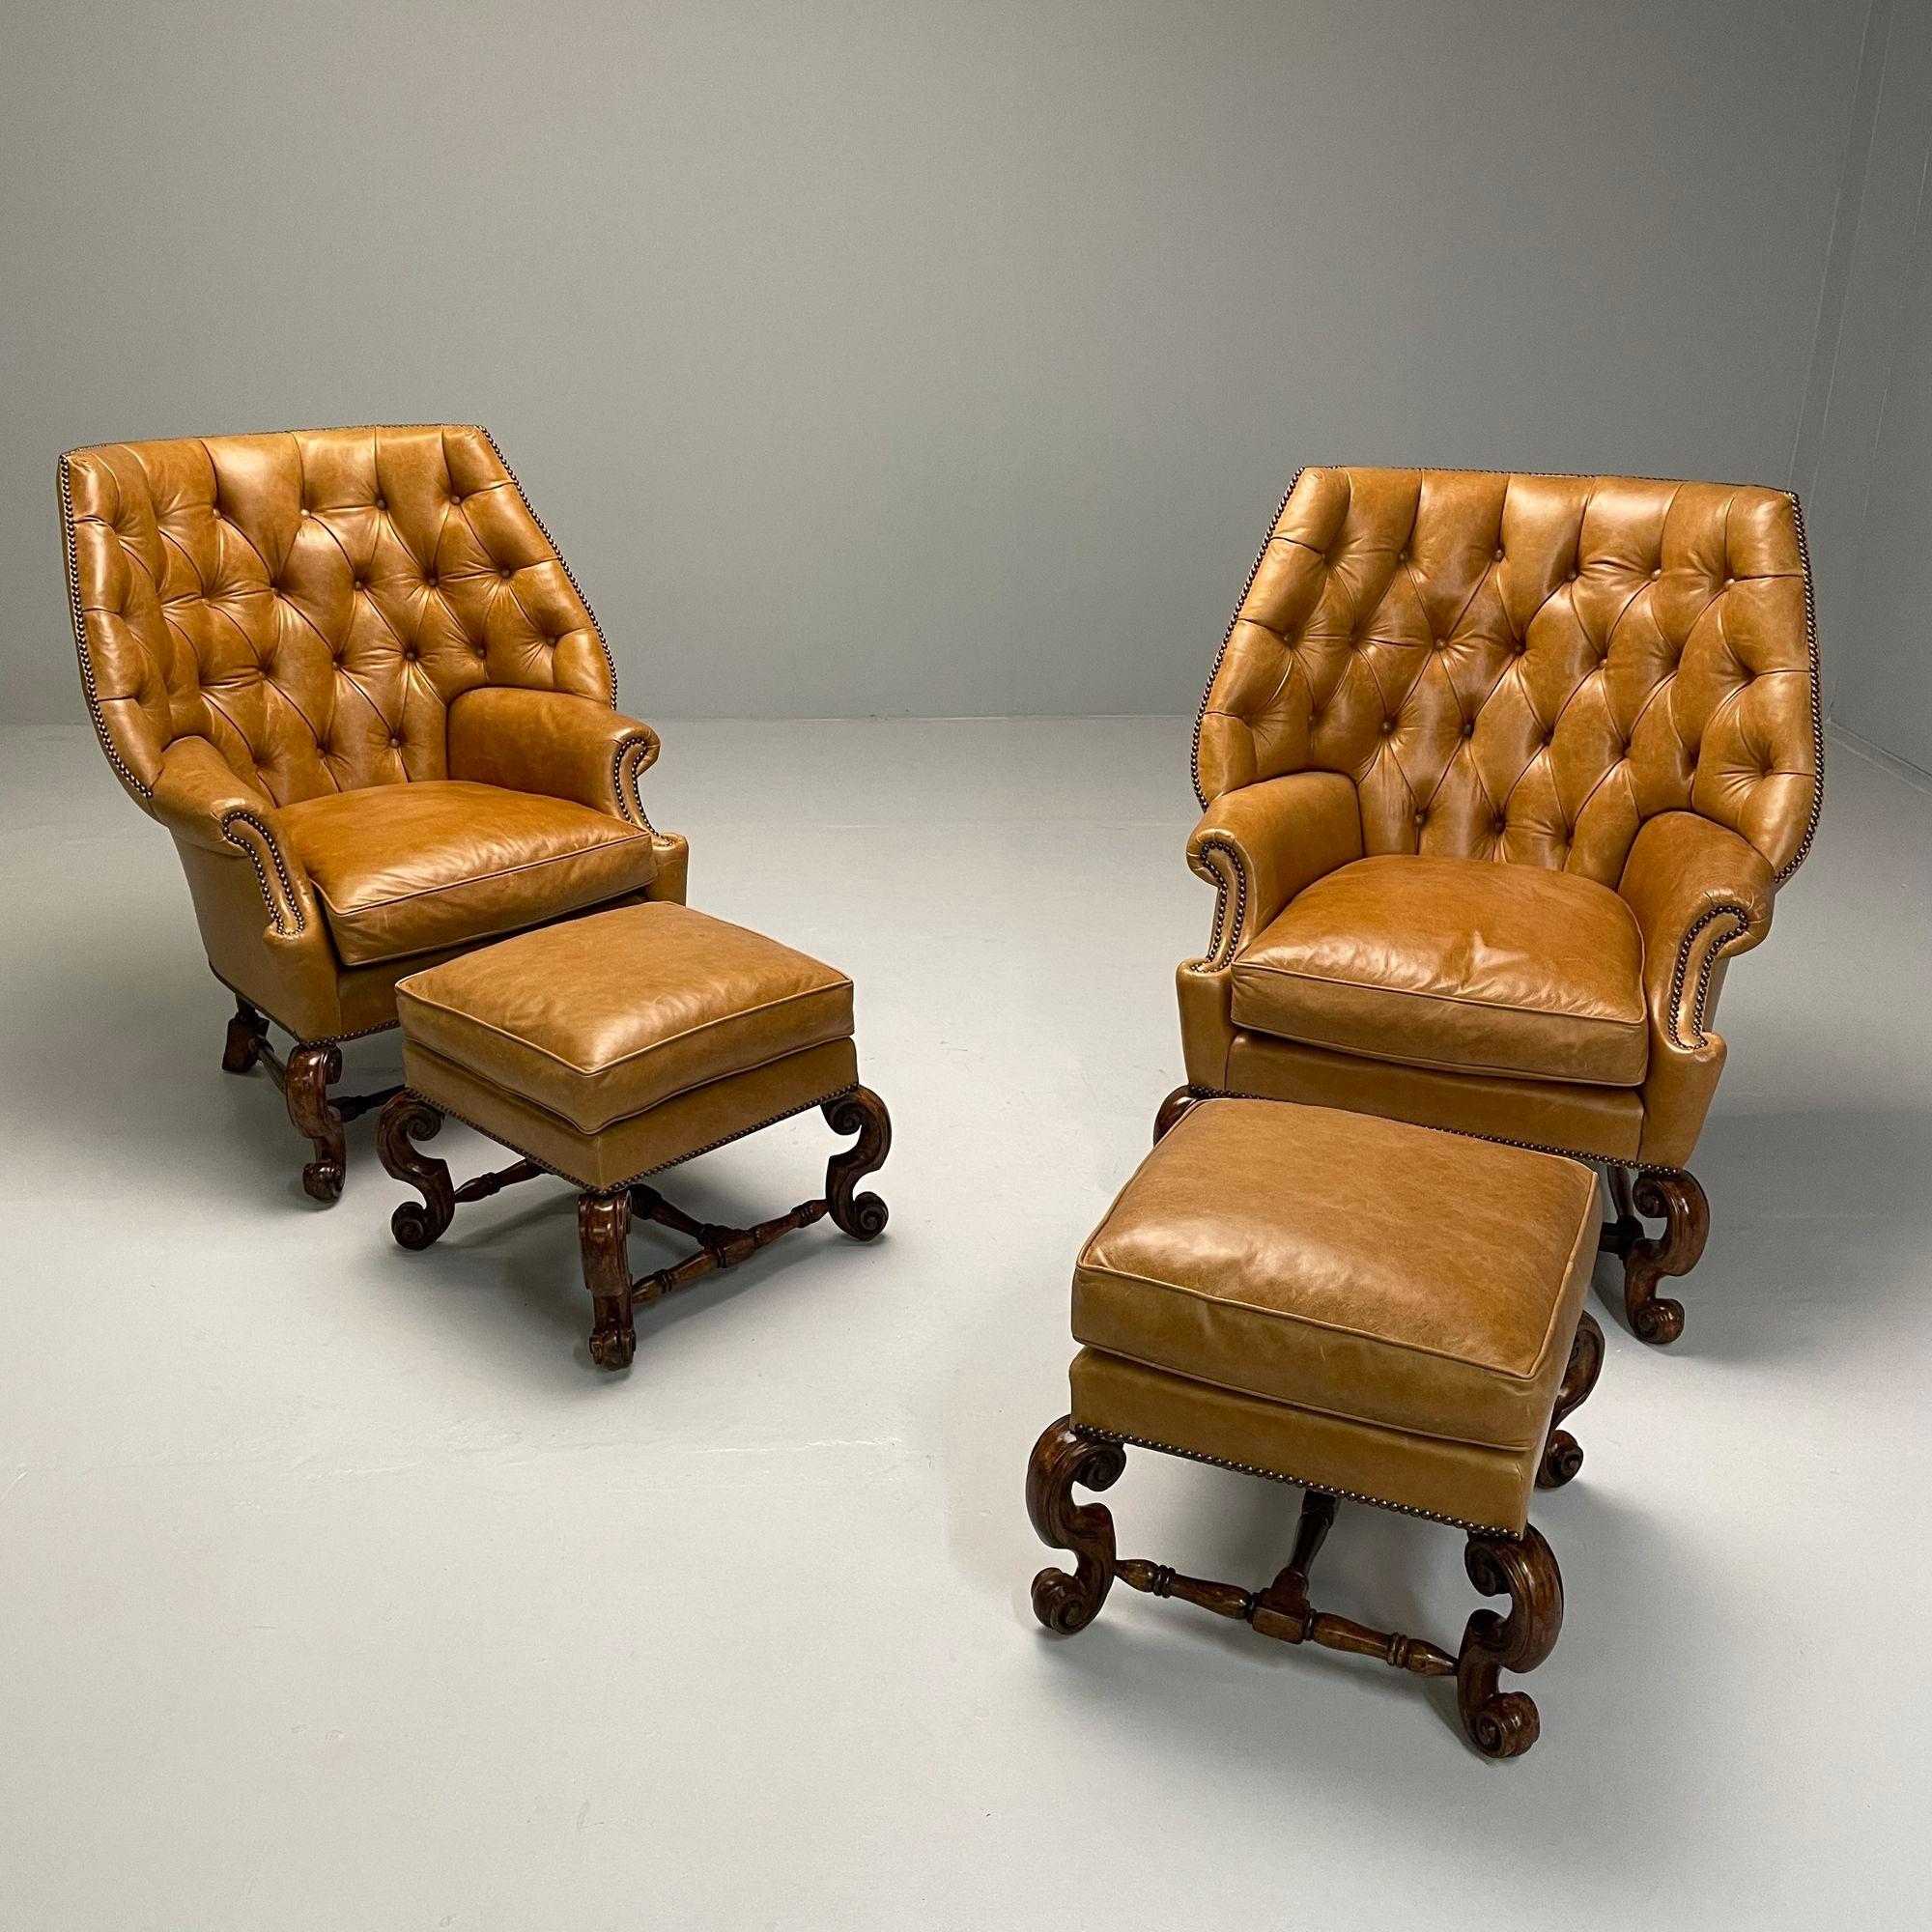 Georgian, Große Sessel, Ottomane, Tan Leder, USA 2000s

Zwei große Ledersessel mit getufteter Rückenlehne und zwei dazu passende Ottomane. Diese Sessel haben großzügige, umhüllende Rückenlehnen, Nagelkopfverzierungen und abnehmbare Sitzkissen. Jeder